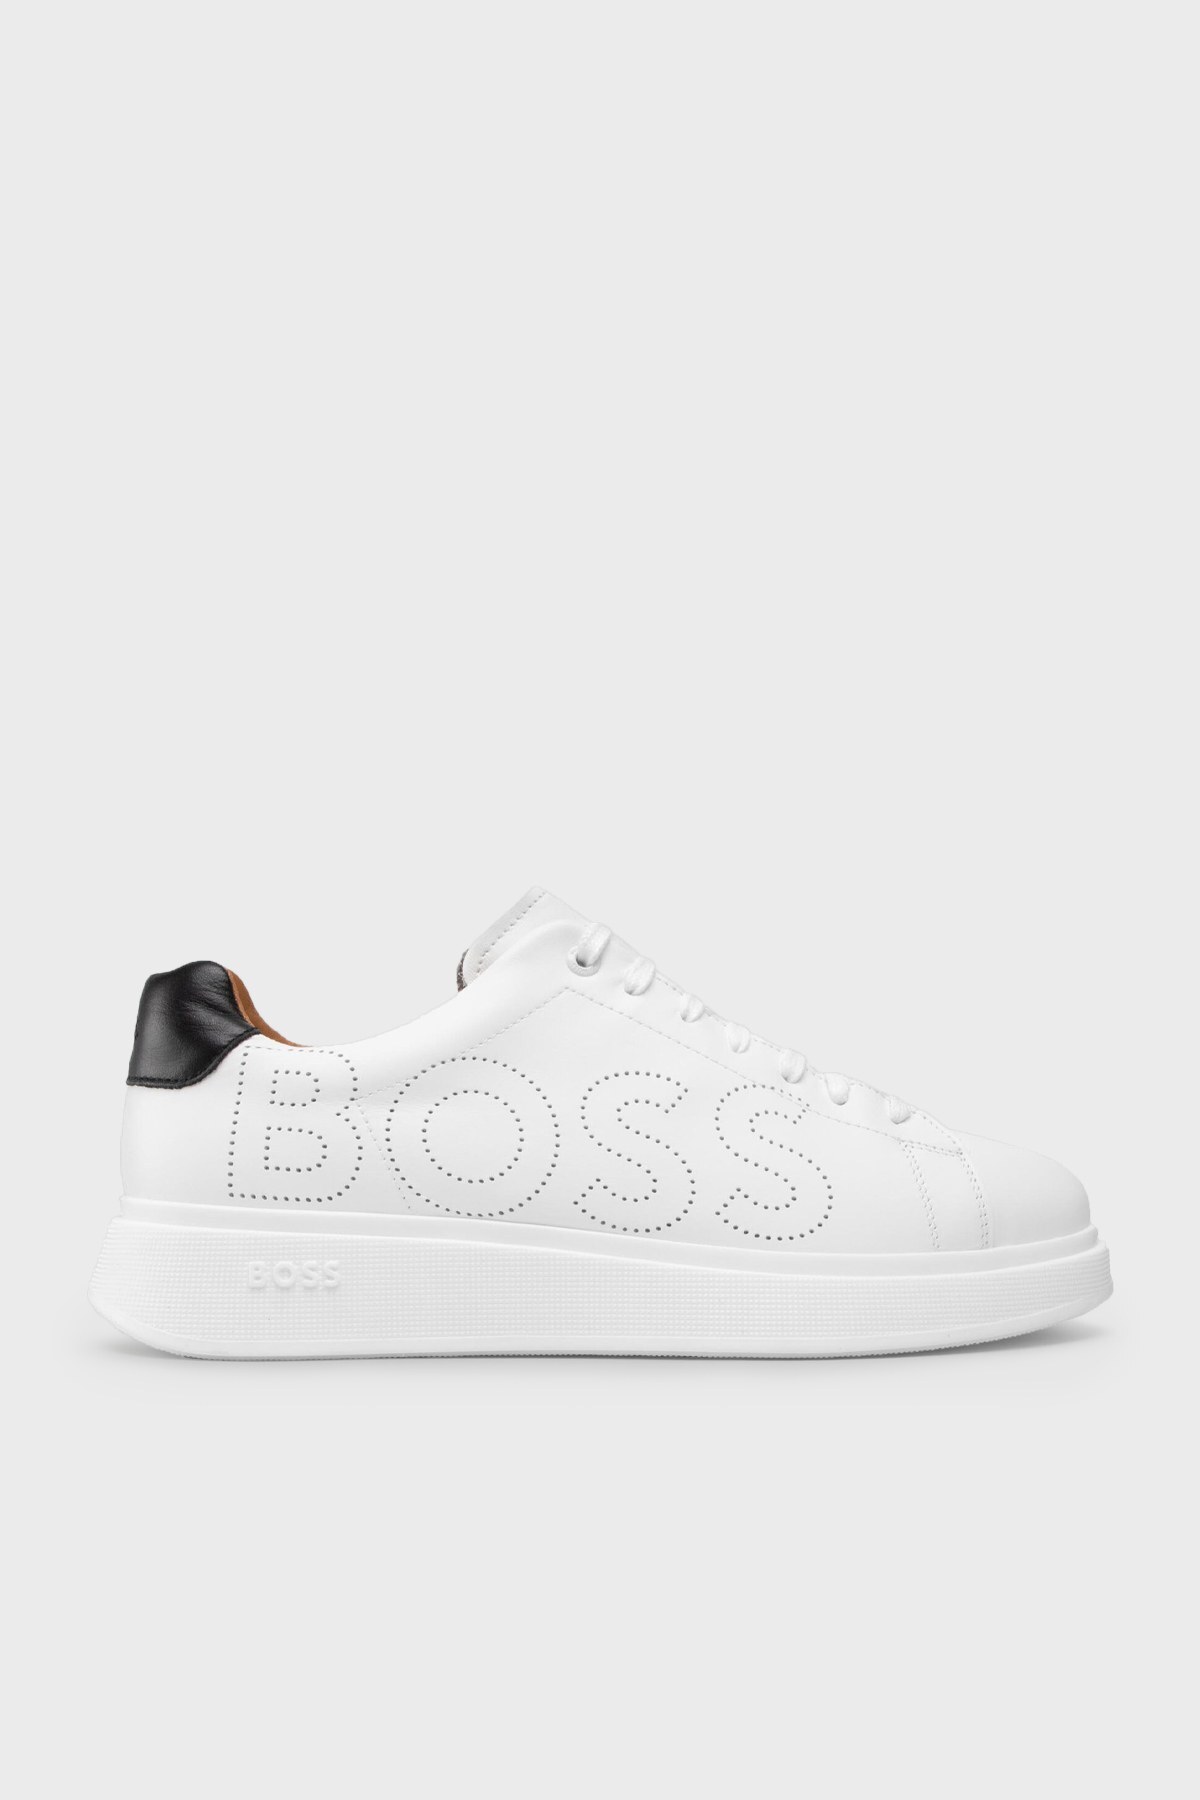 Boss Logolu Hakiki Deri Erkek Ayakkabı 50470944 100 BEYAZ